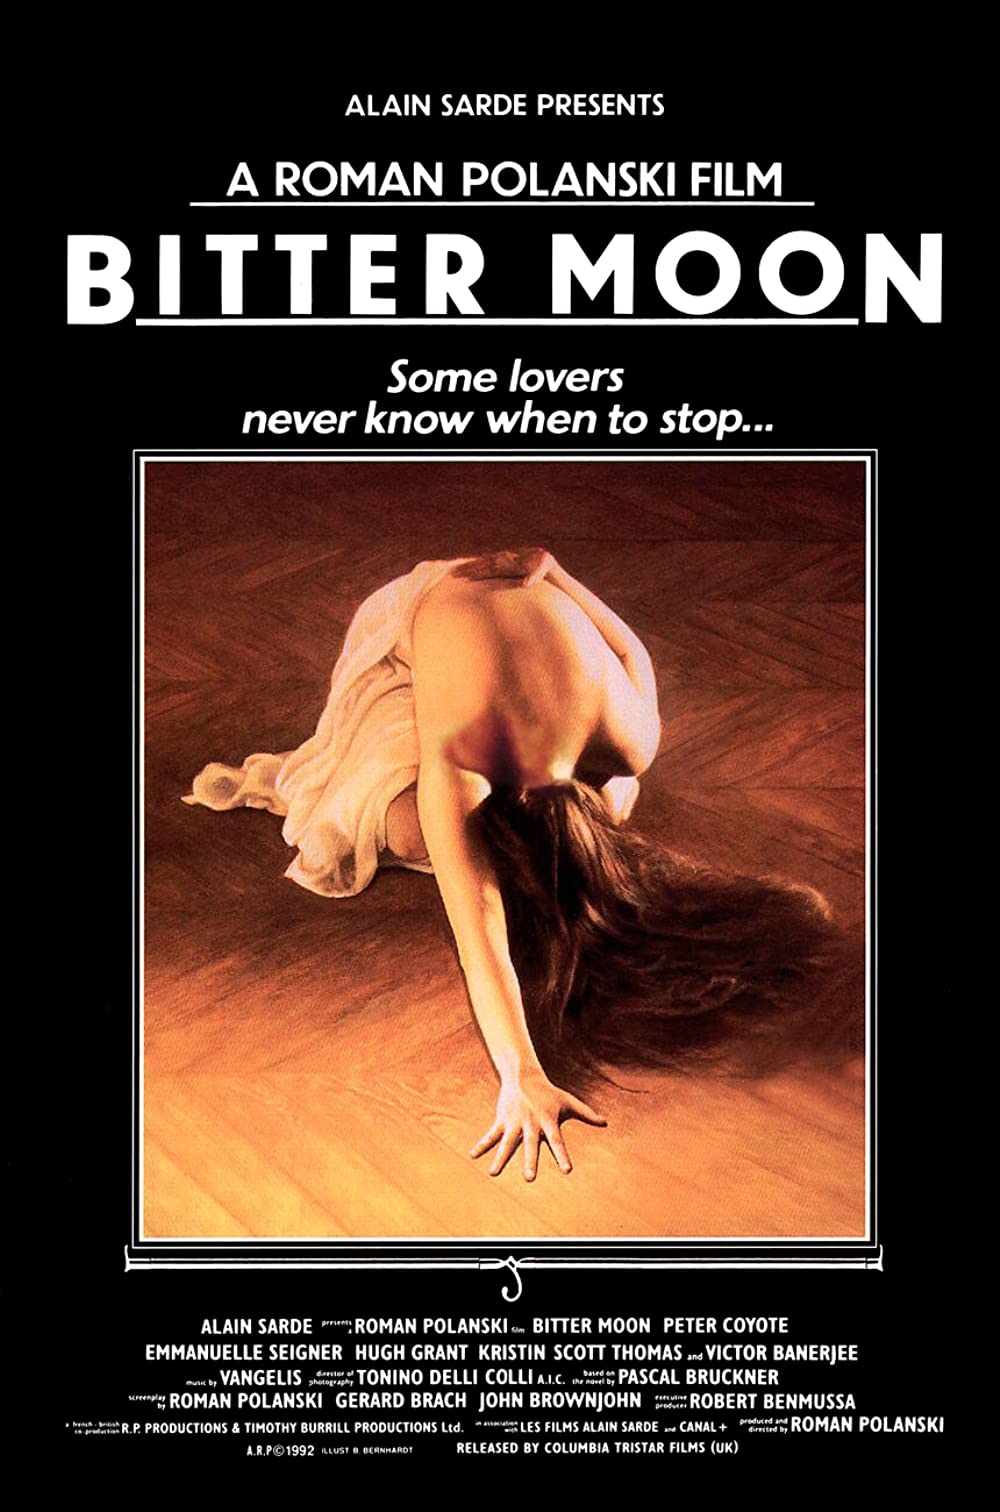 Filmbeschreibung zu Bitter Moon